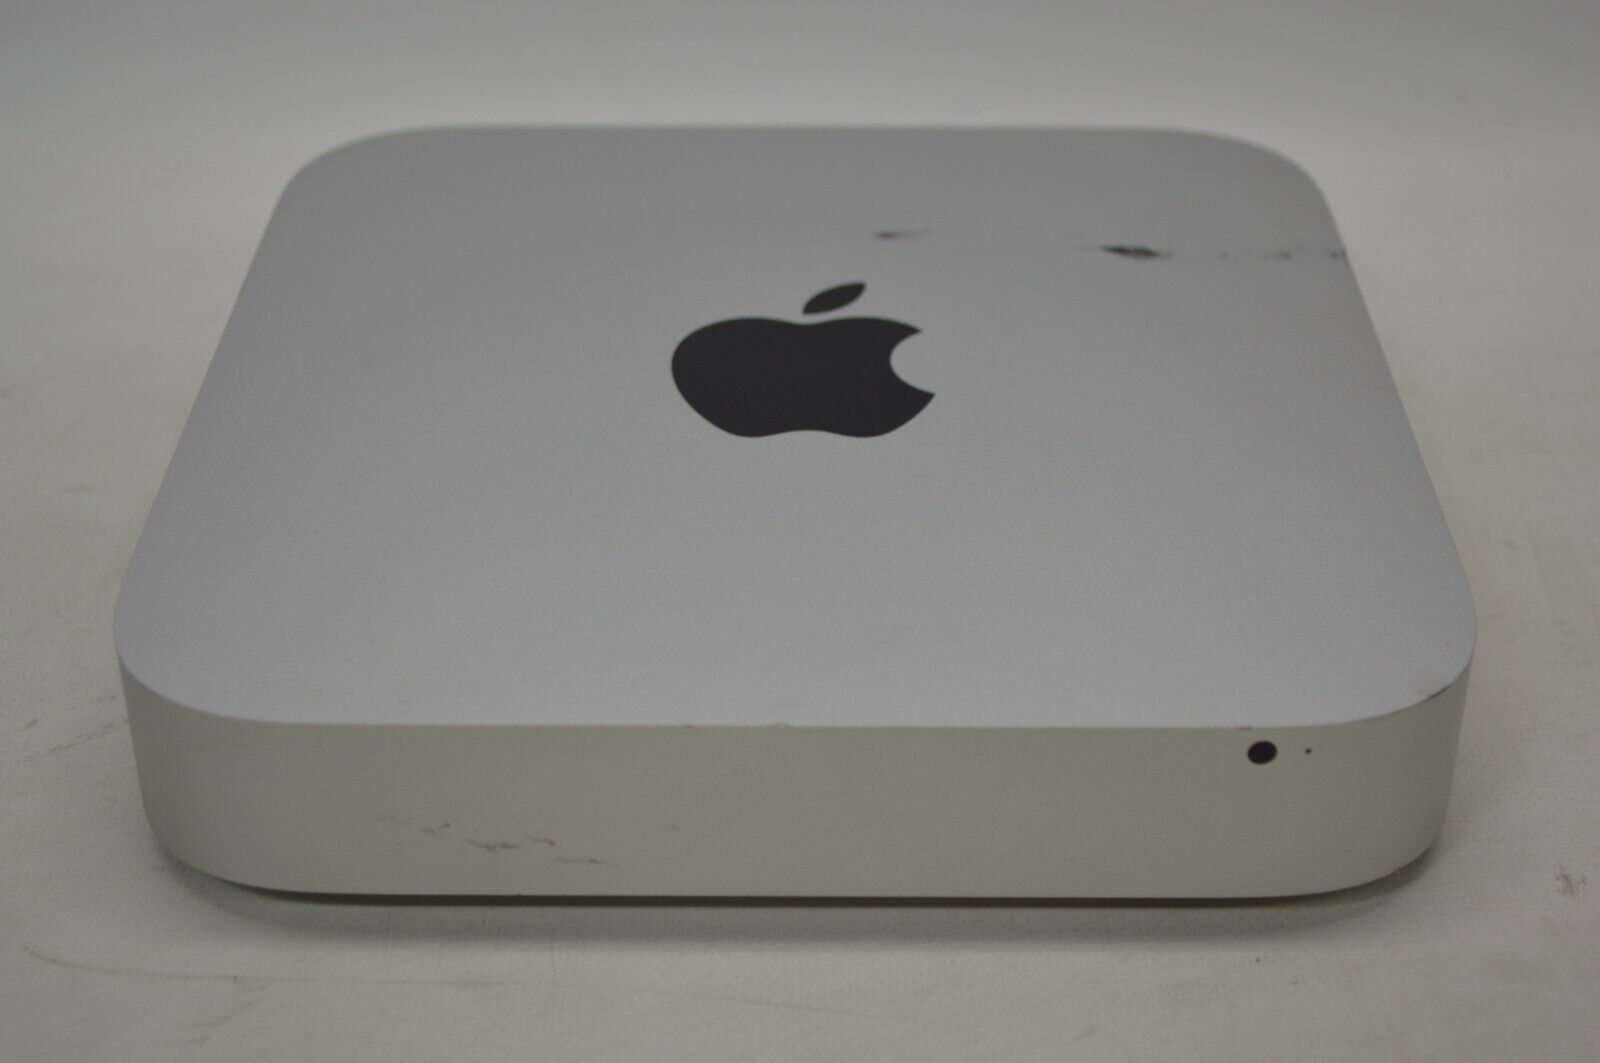 Apple Mac Mini A1347 7,1 MGEN2LL/A 2.6GHz i5-4278U 8GB RAM 1TB HDD 10.13 Grade A